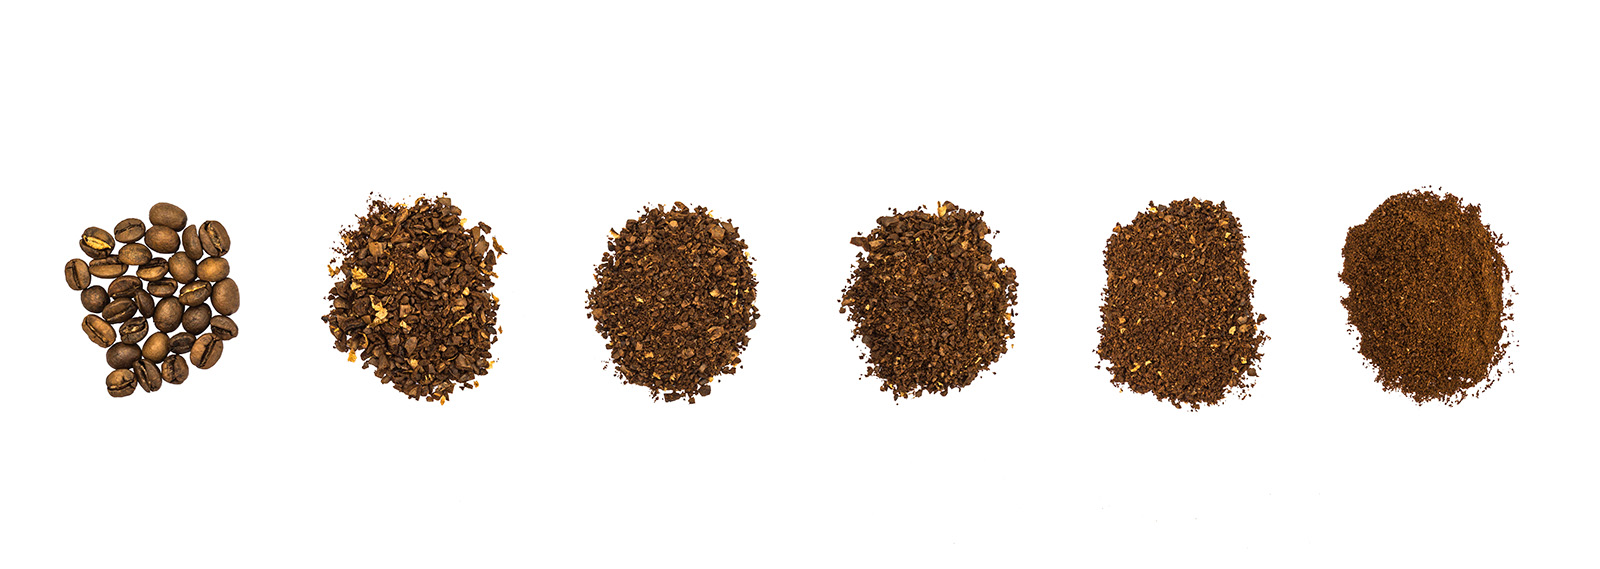 Kahvin jauhatuskaavake: eri valmistusmenetelmille jauhaminen